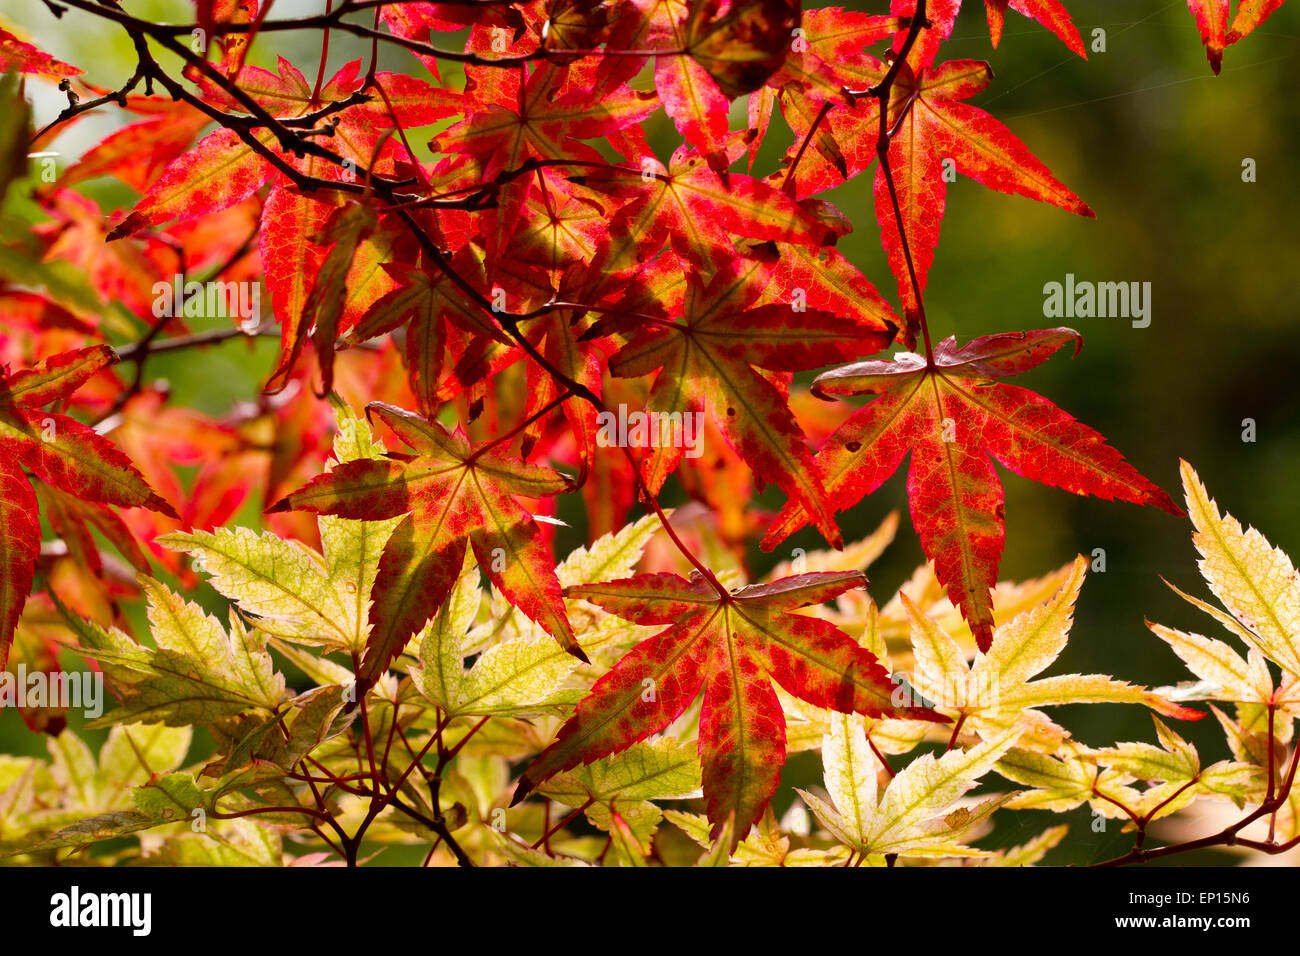 L'érable japonais (Acer palmatum) variété 'Ginko San' feuilles sur un arbre tournant dans la couleur de l'automne. Herefordshire, en Angleterre. Septembre. Banque D'Images